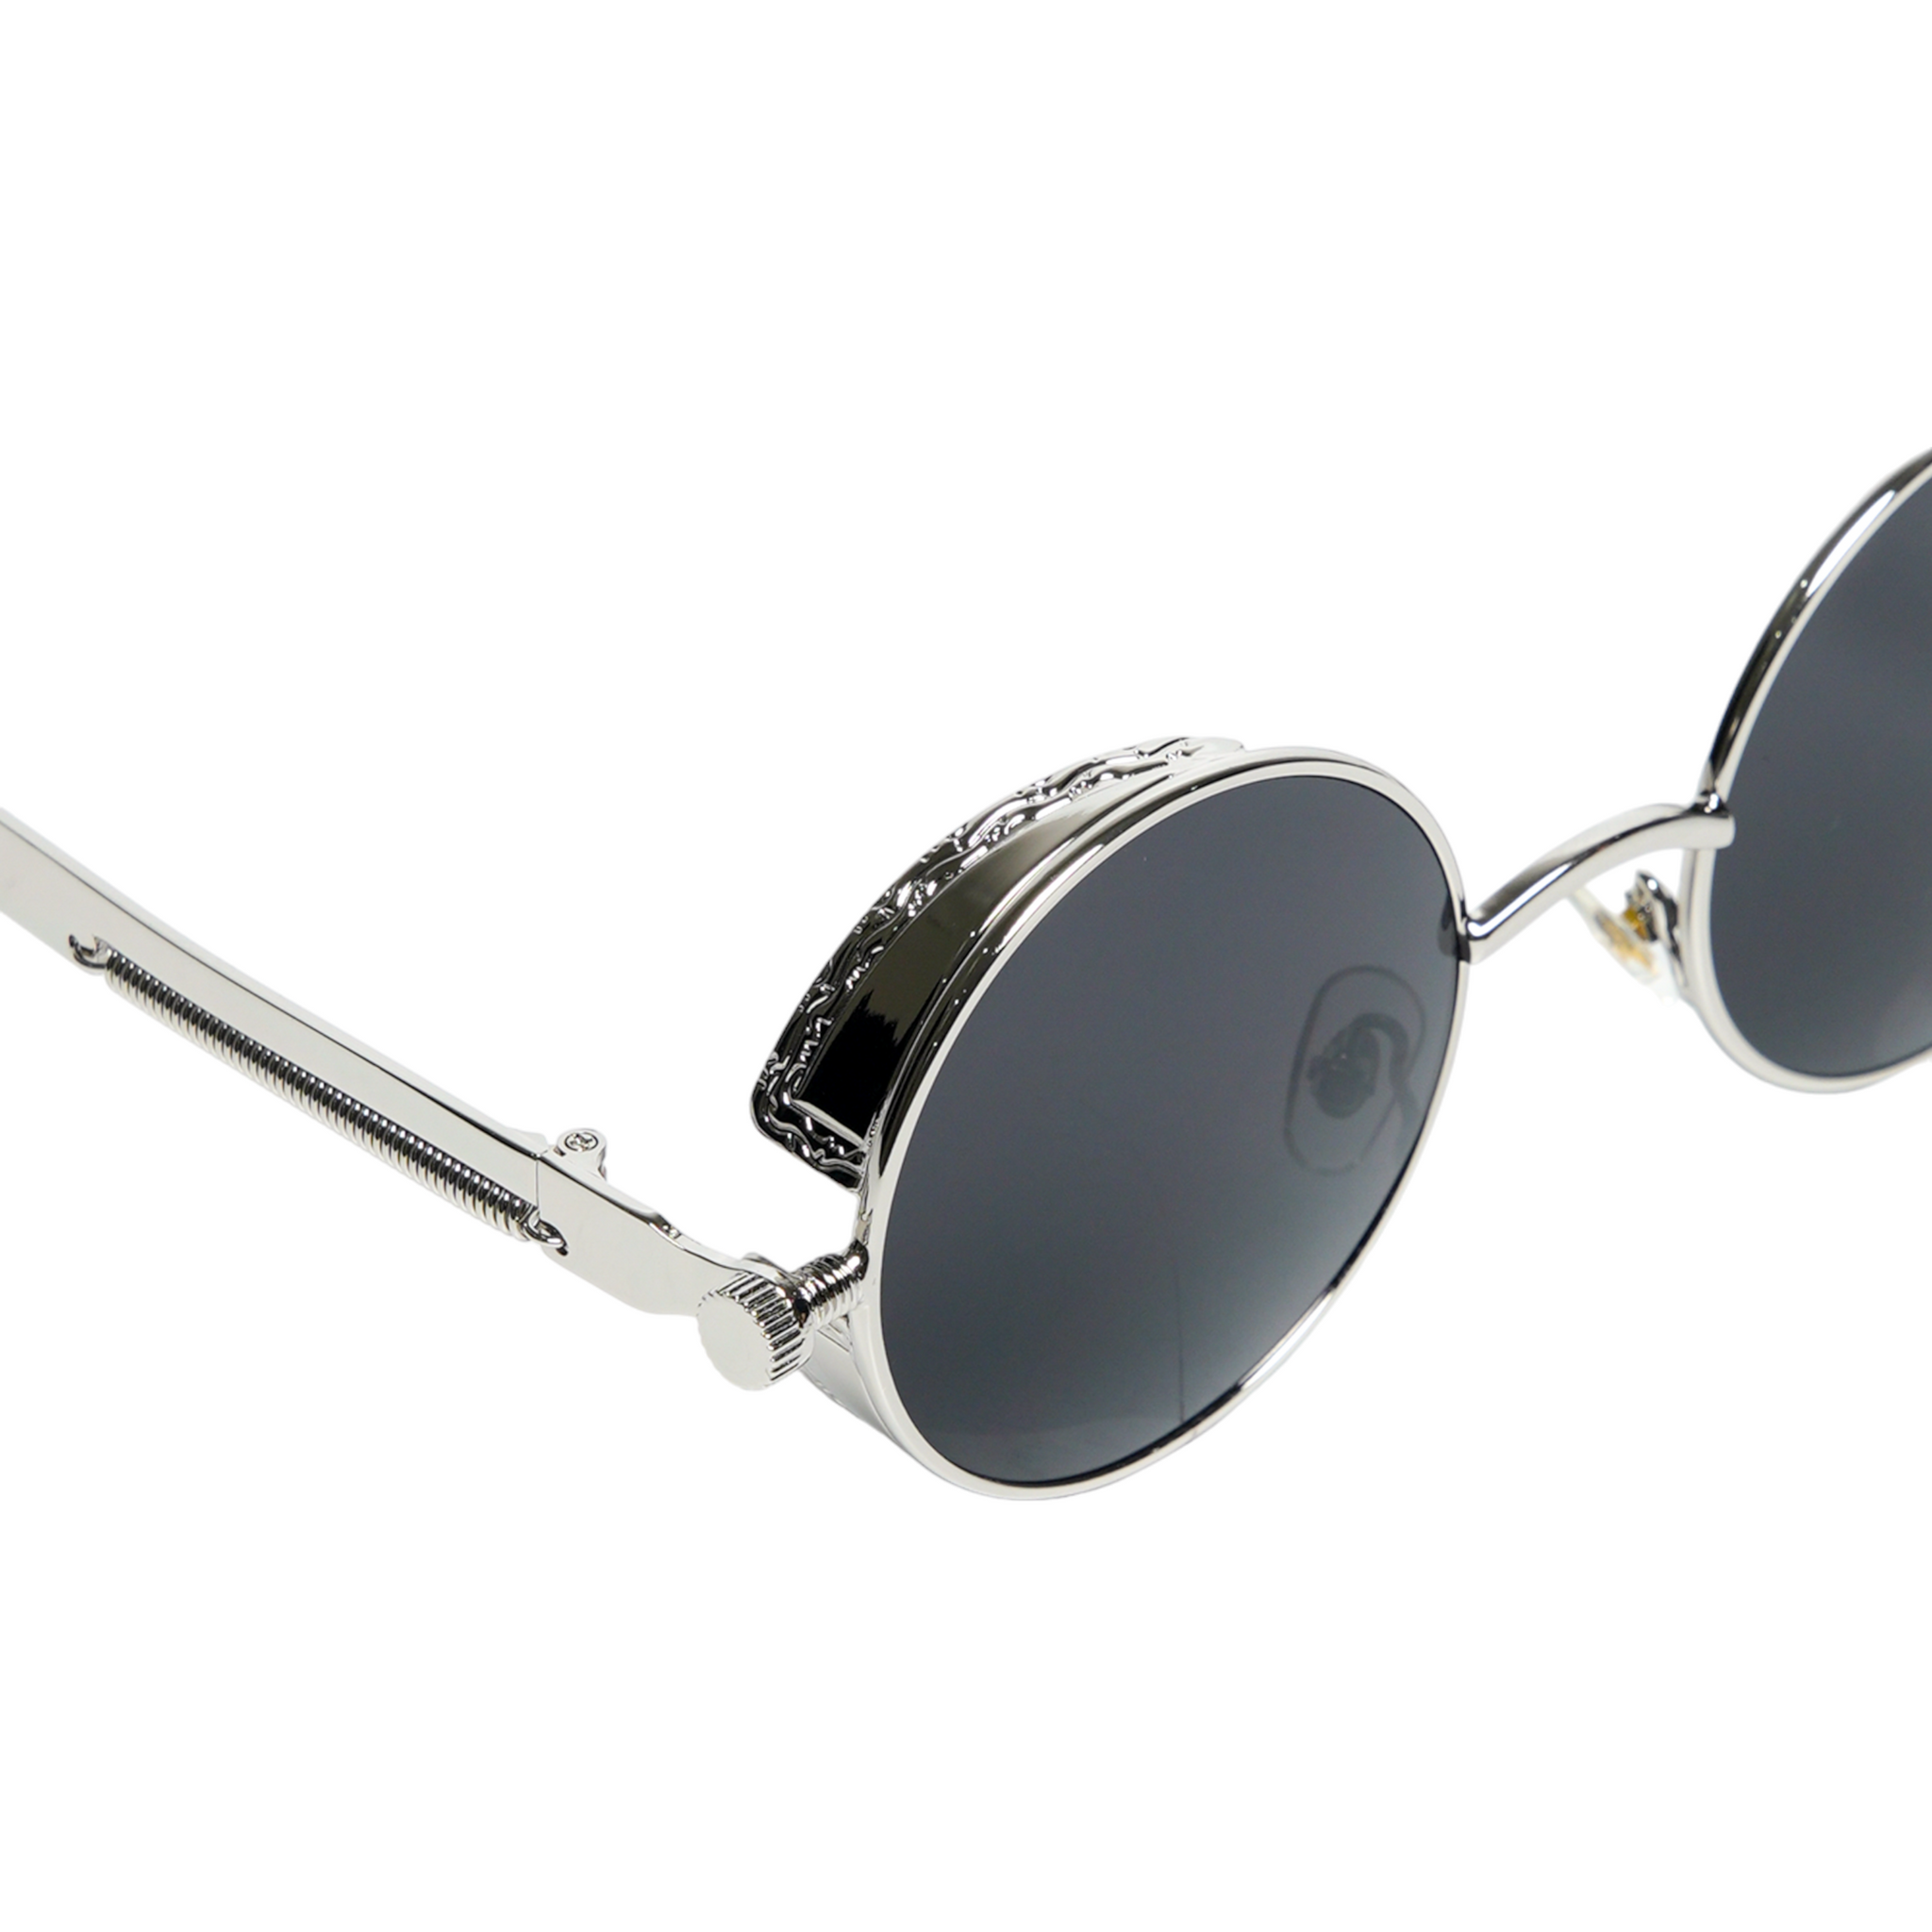 Chokore Retro Polarized Round Sunglasses (Black & Silver)